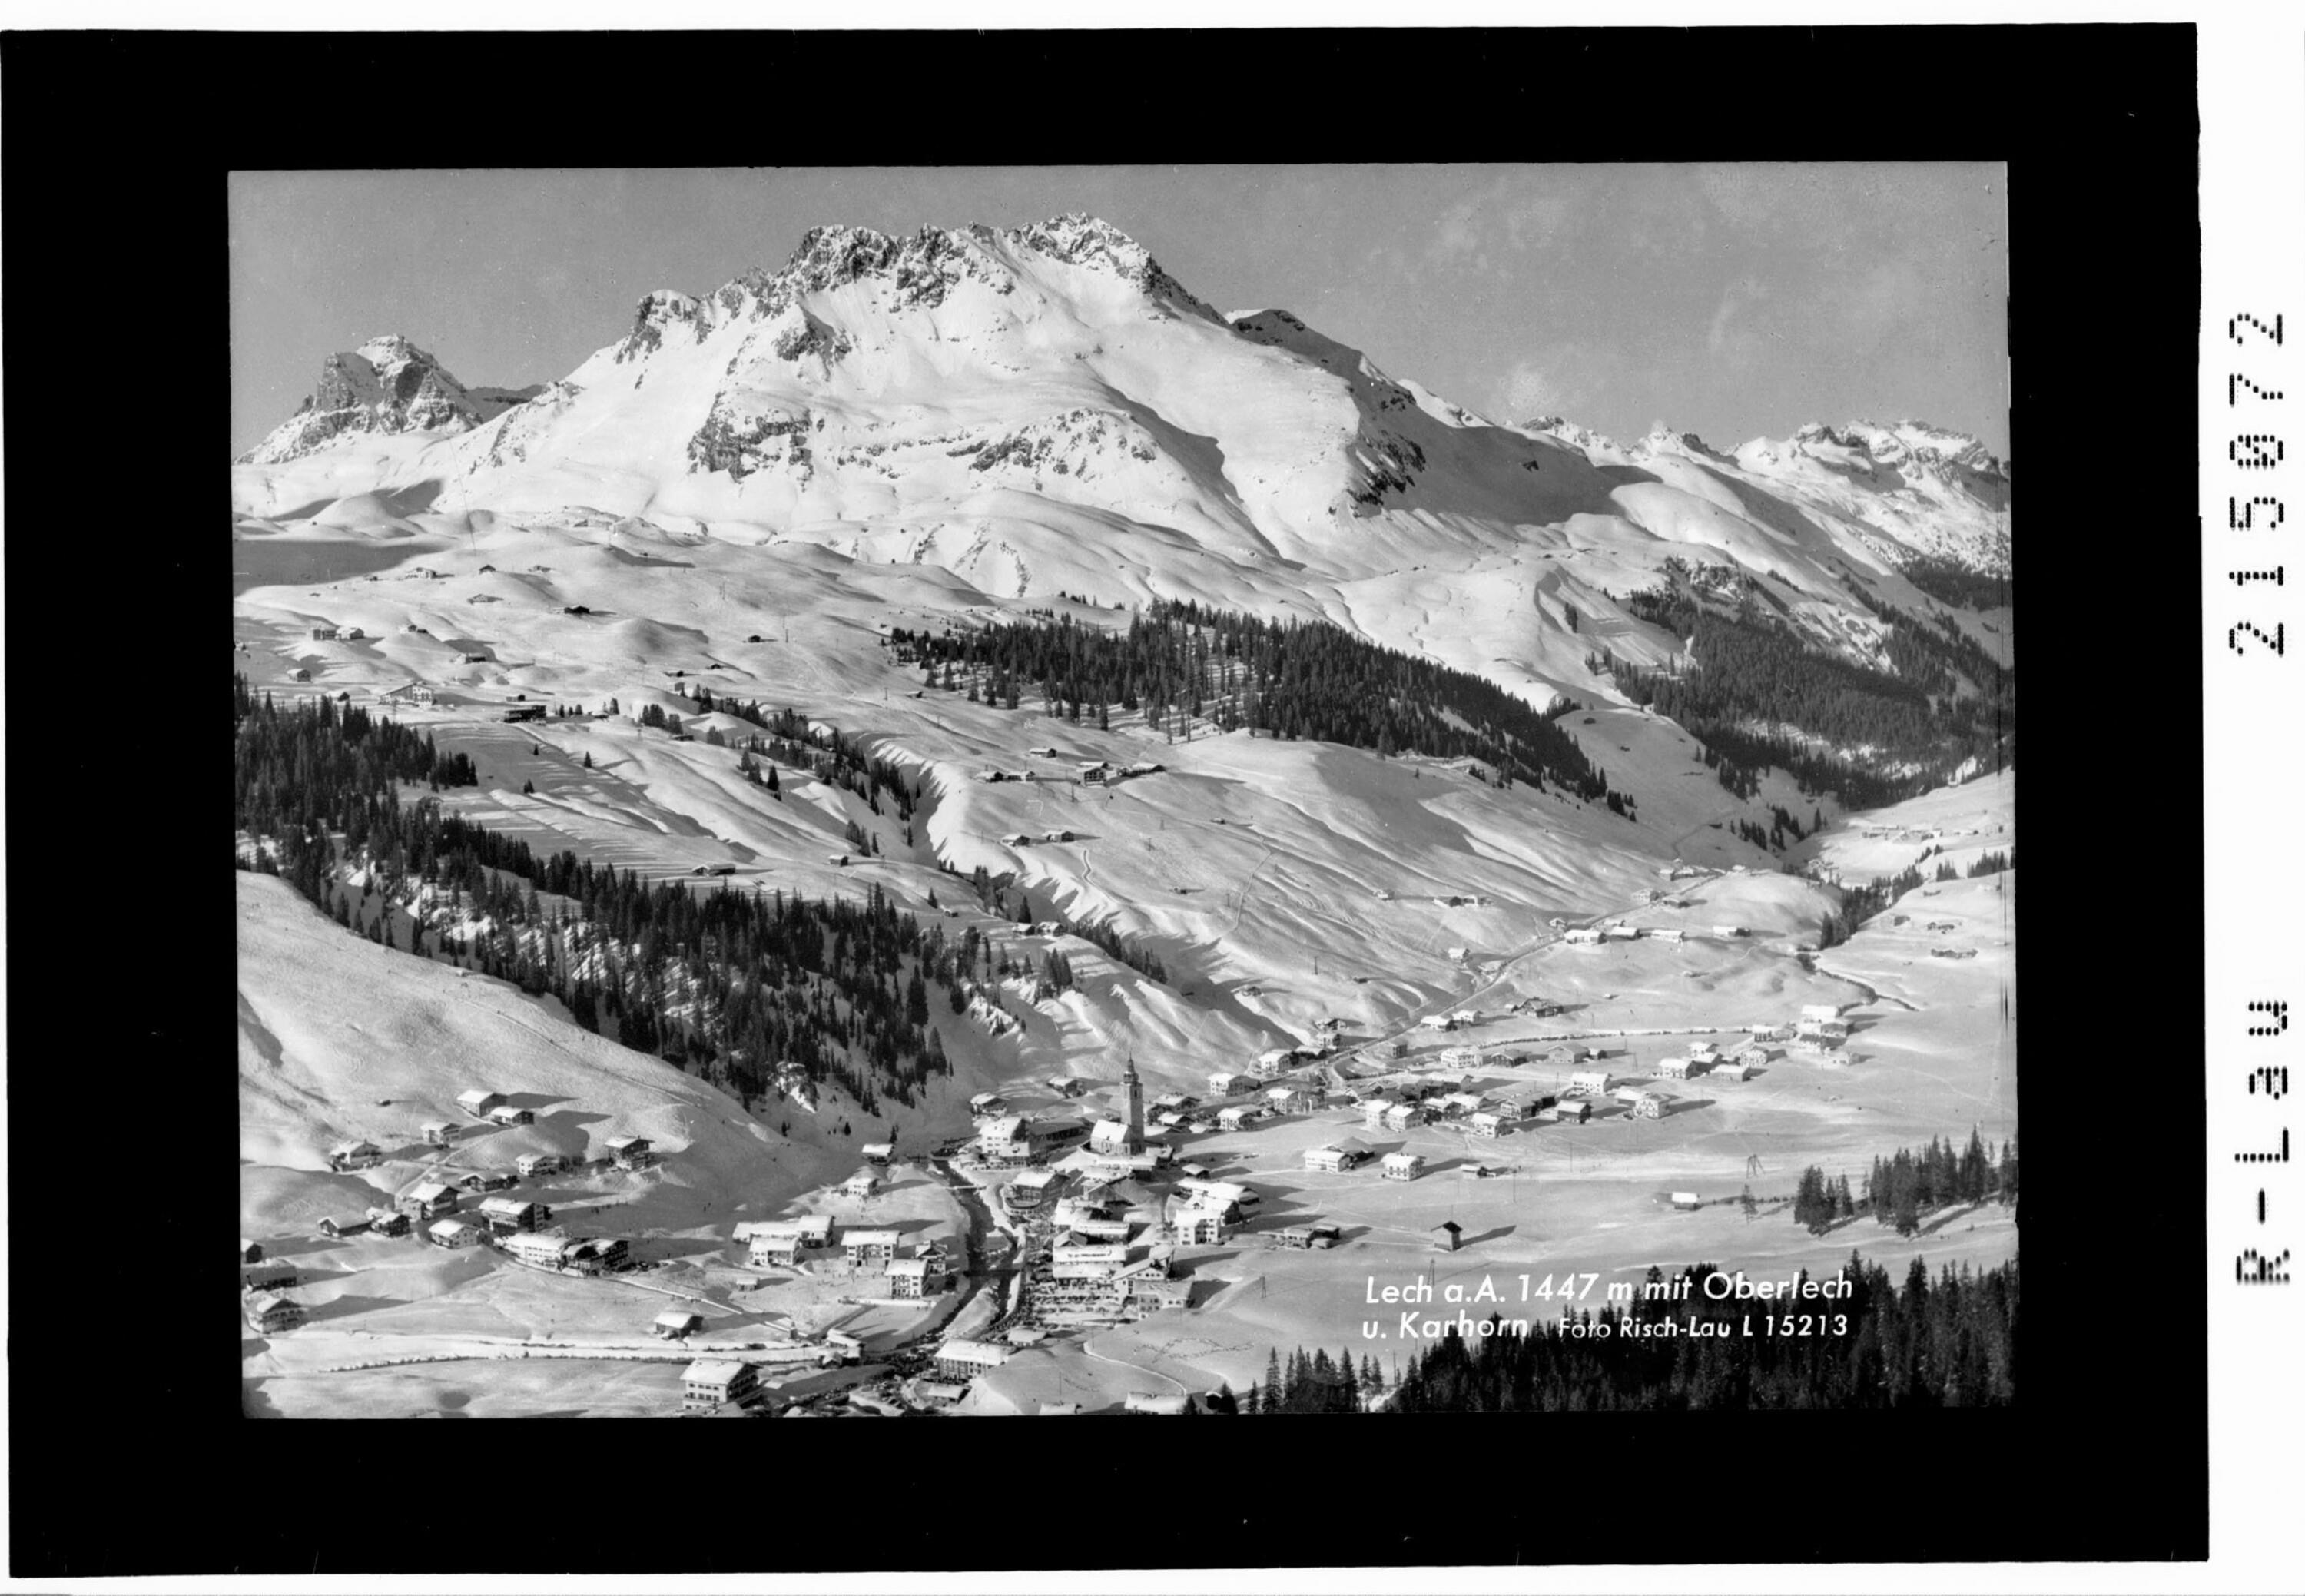 Lech am Arlberg 1447 m mit Oberlech und Karhorn></div>


    <hr>
    <div class=